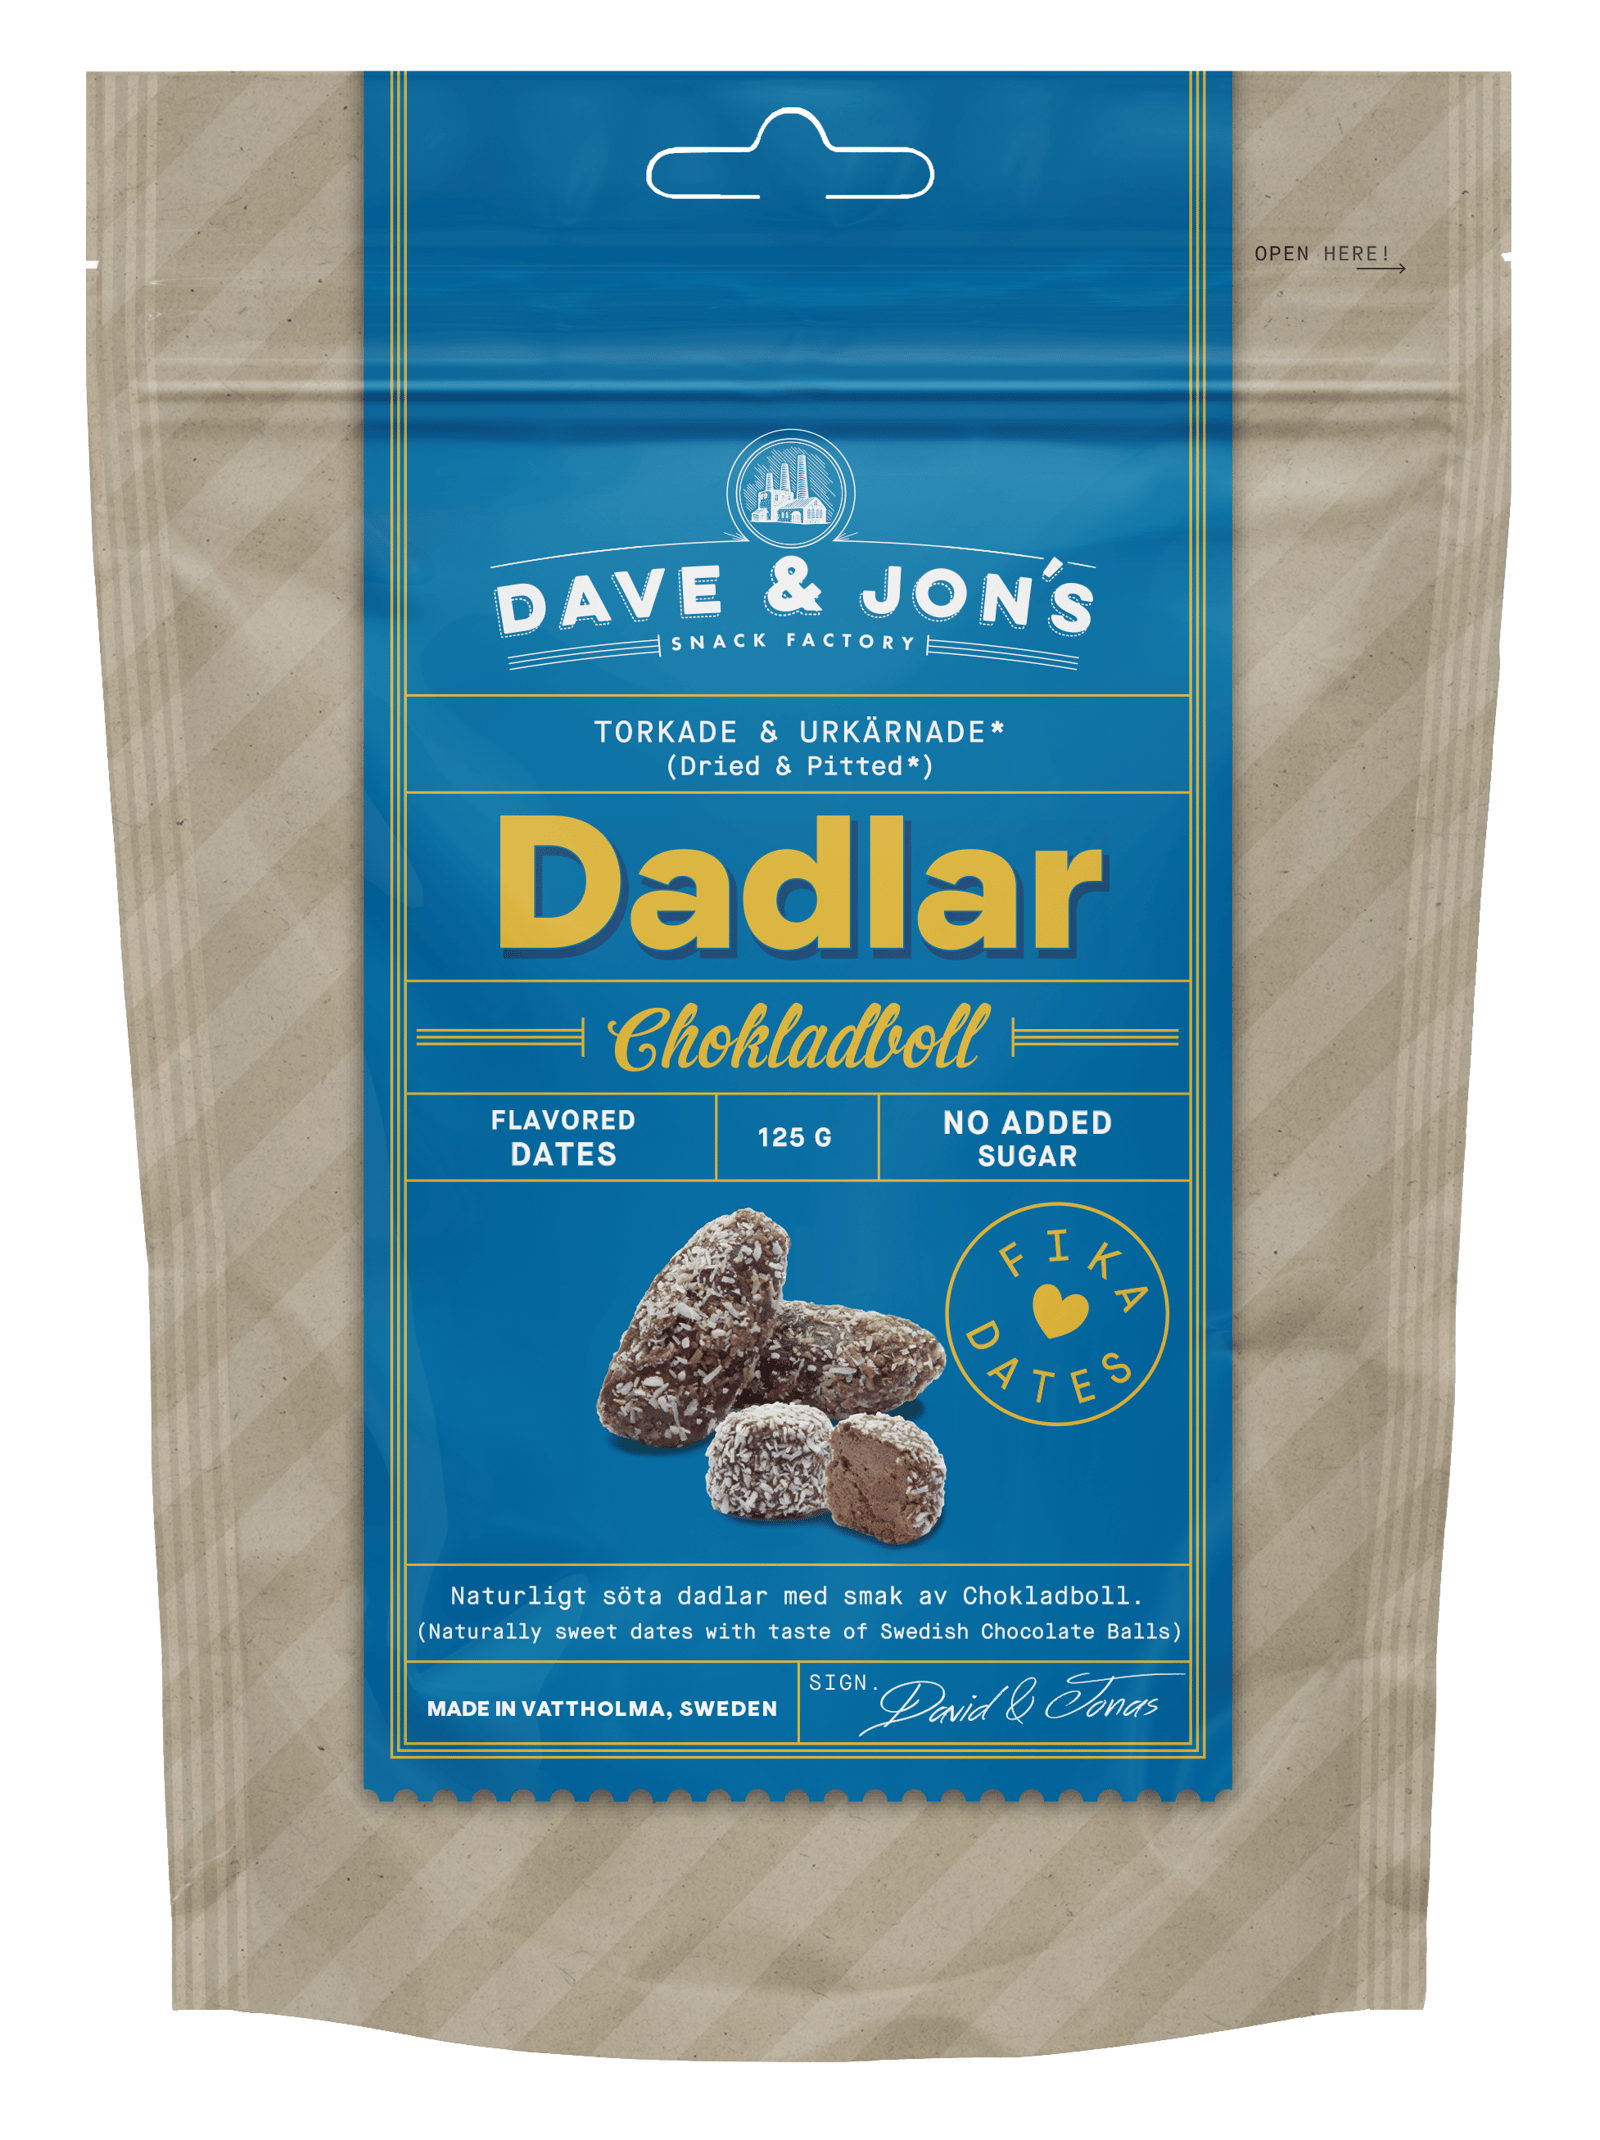 Dave & Jon's Dadlar Chokladboll 125g